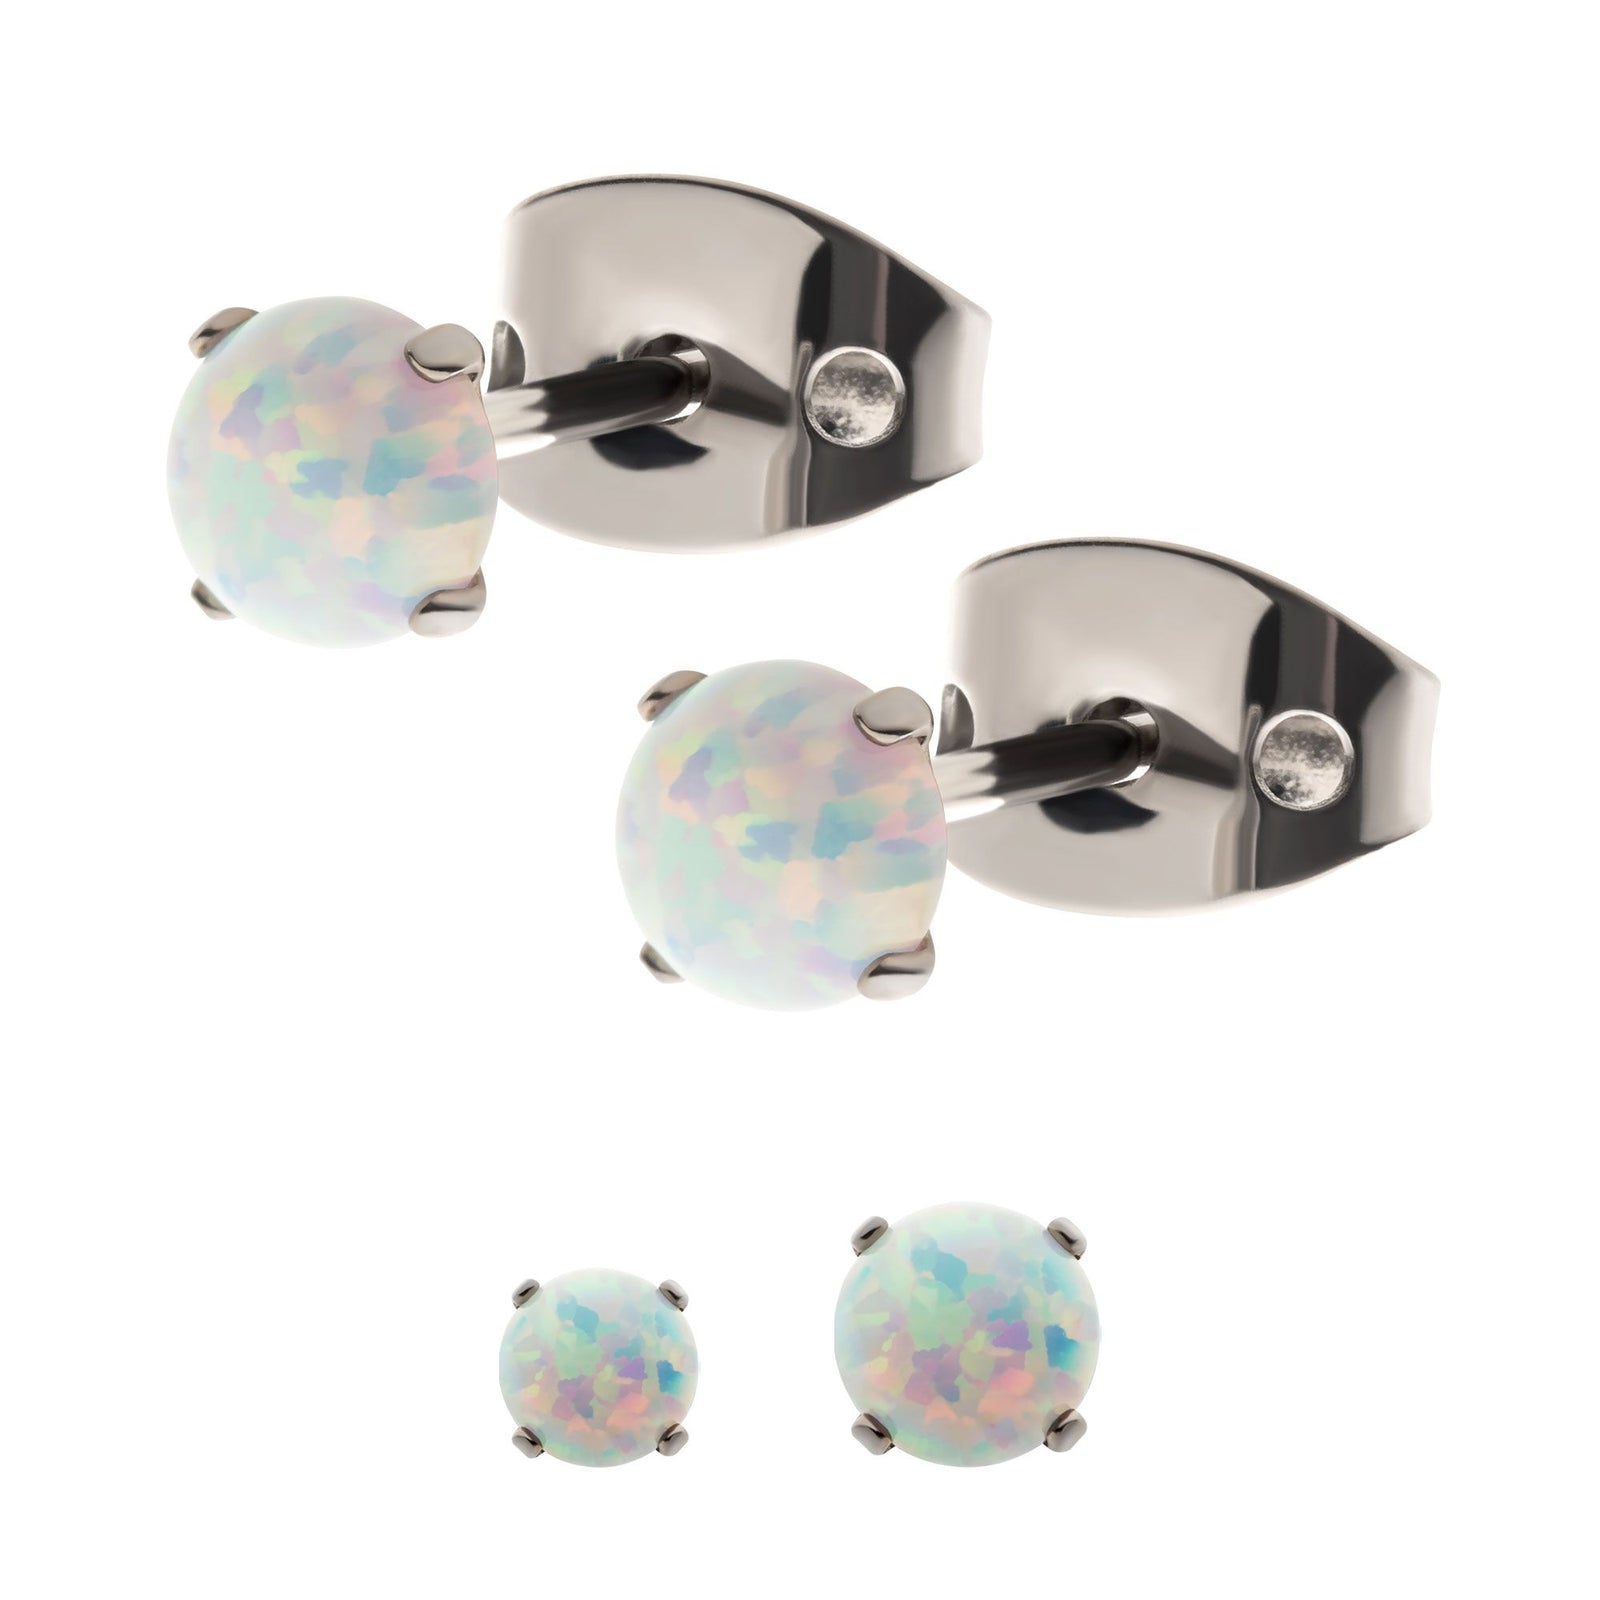 Stud Earrings 20g Titanium Post Butterfly Back 4-Prong Set Opal Stud earring sset712-wo -Rebel Bod-RebelBod